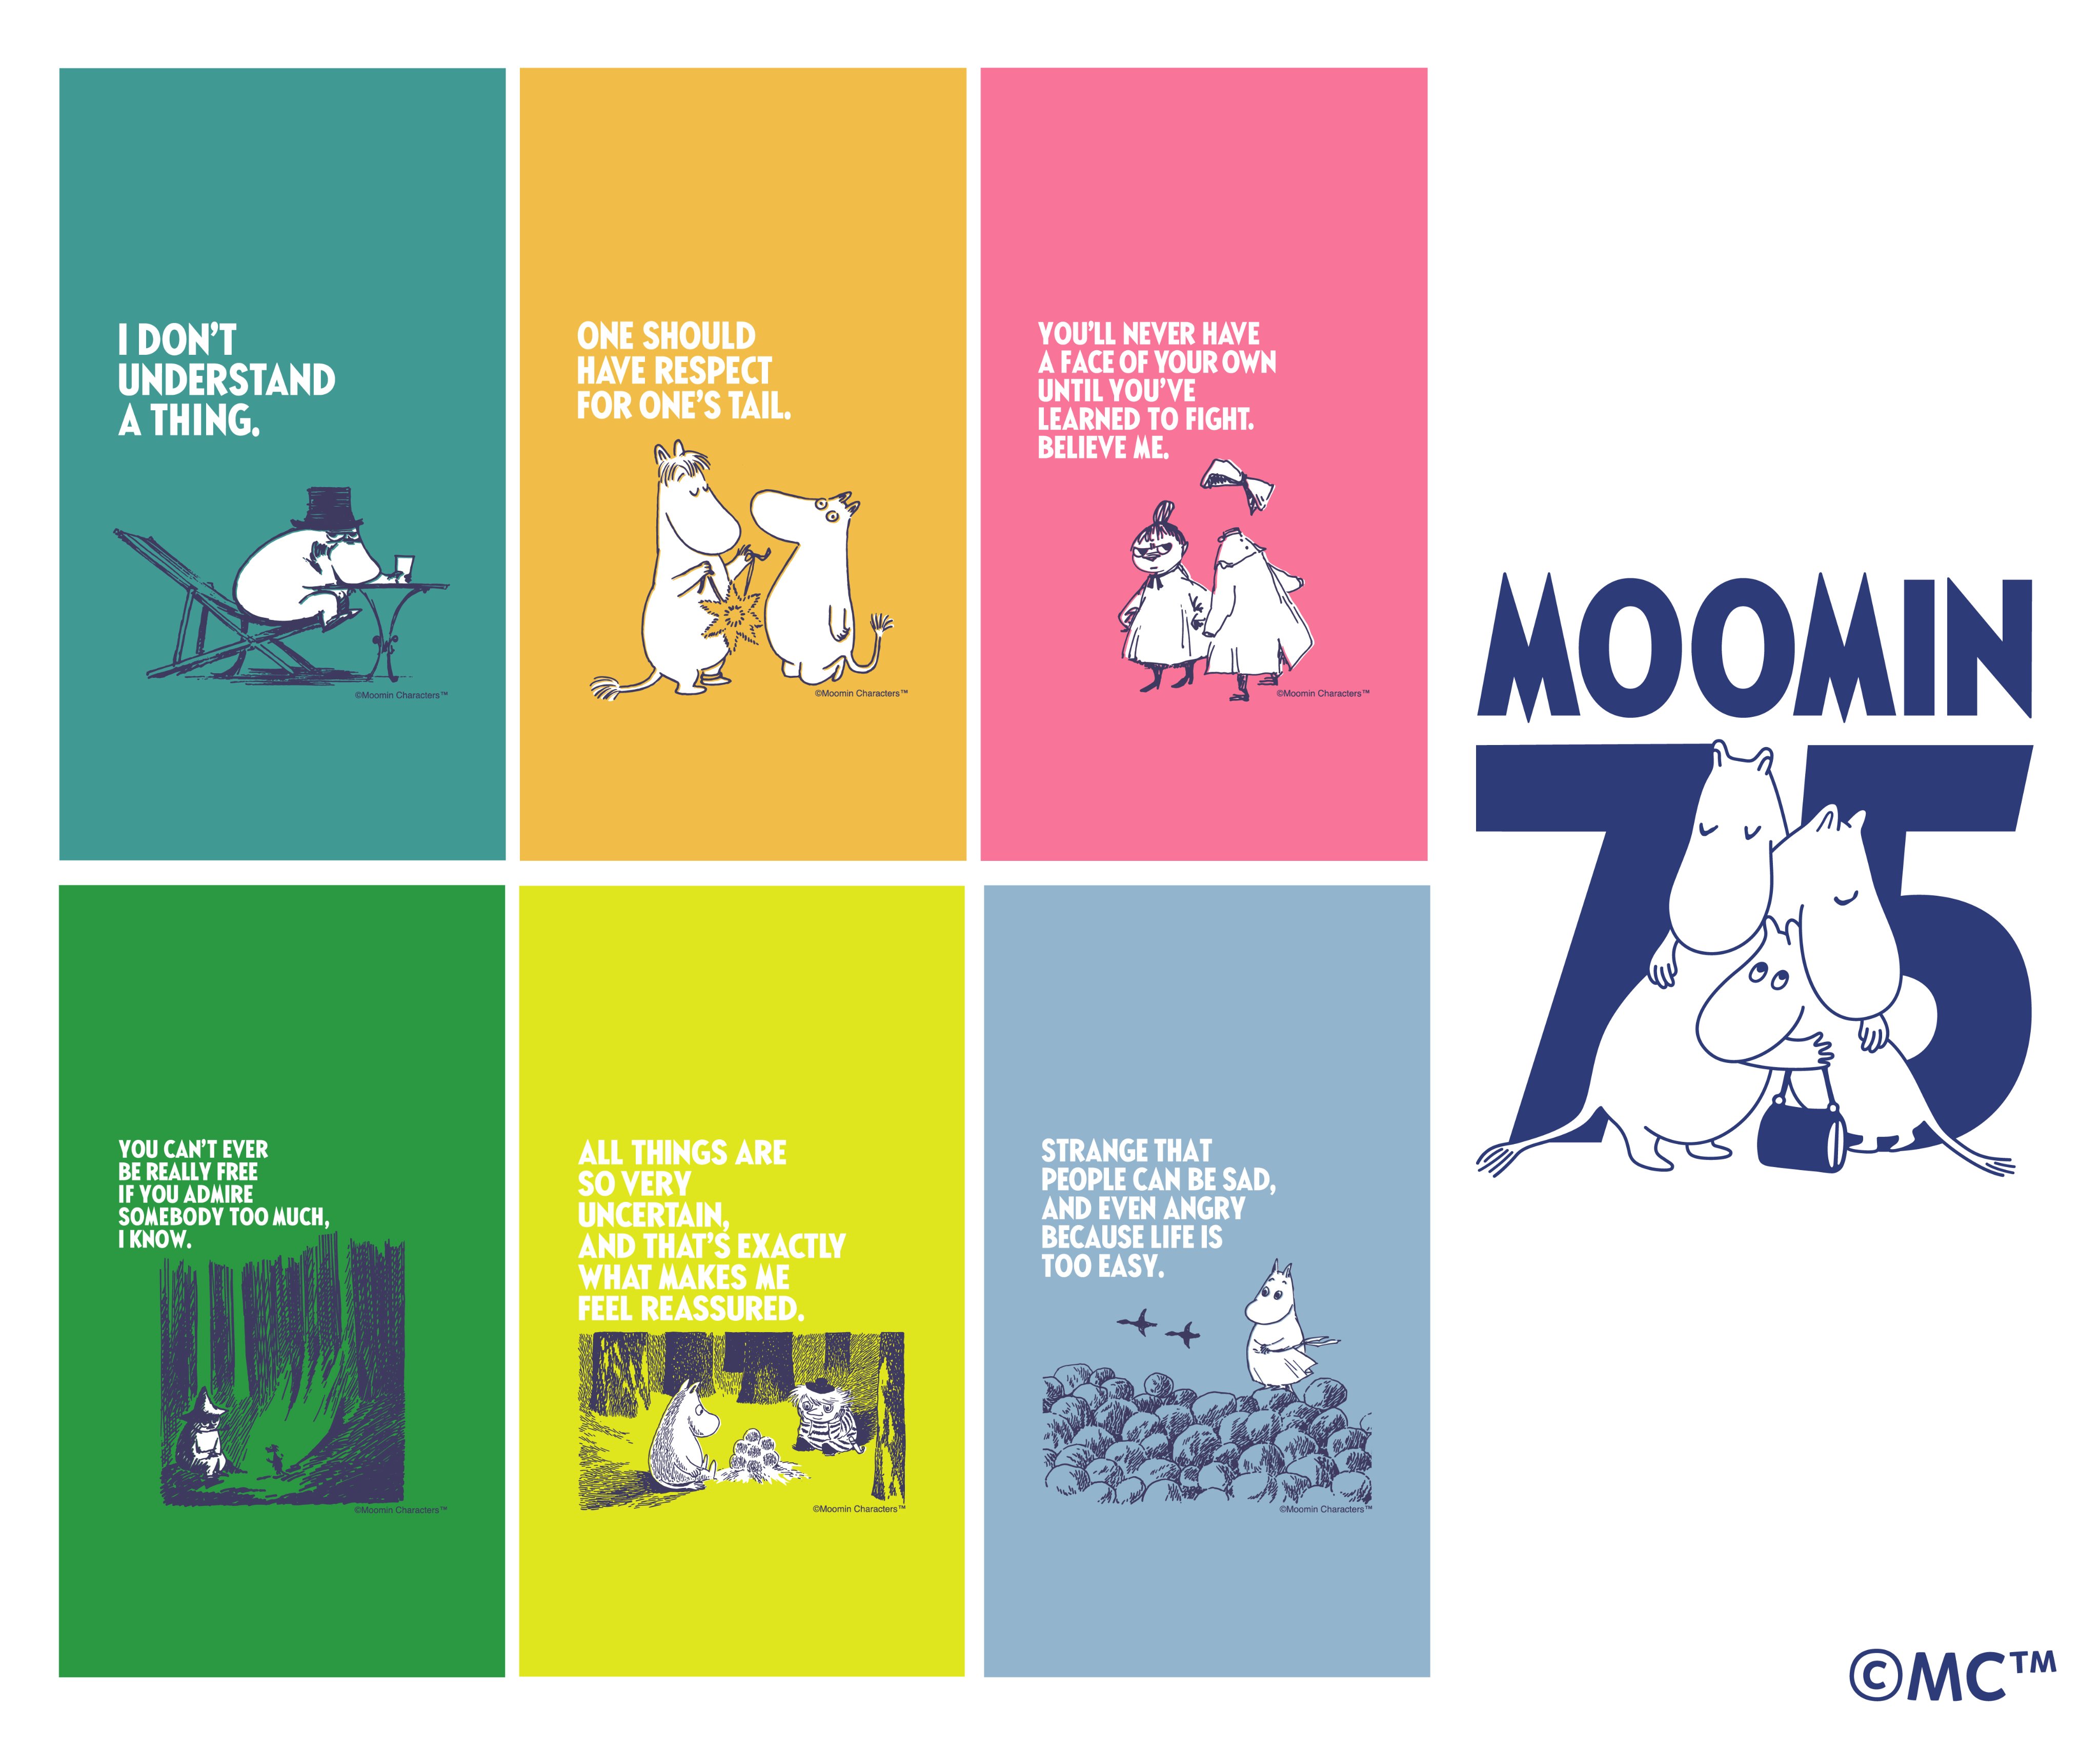 See Moomin Jp S Tweet Twitter